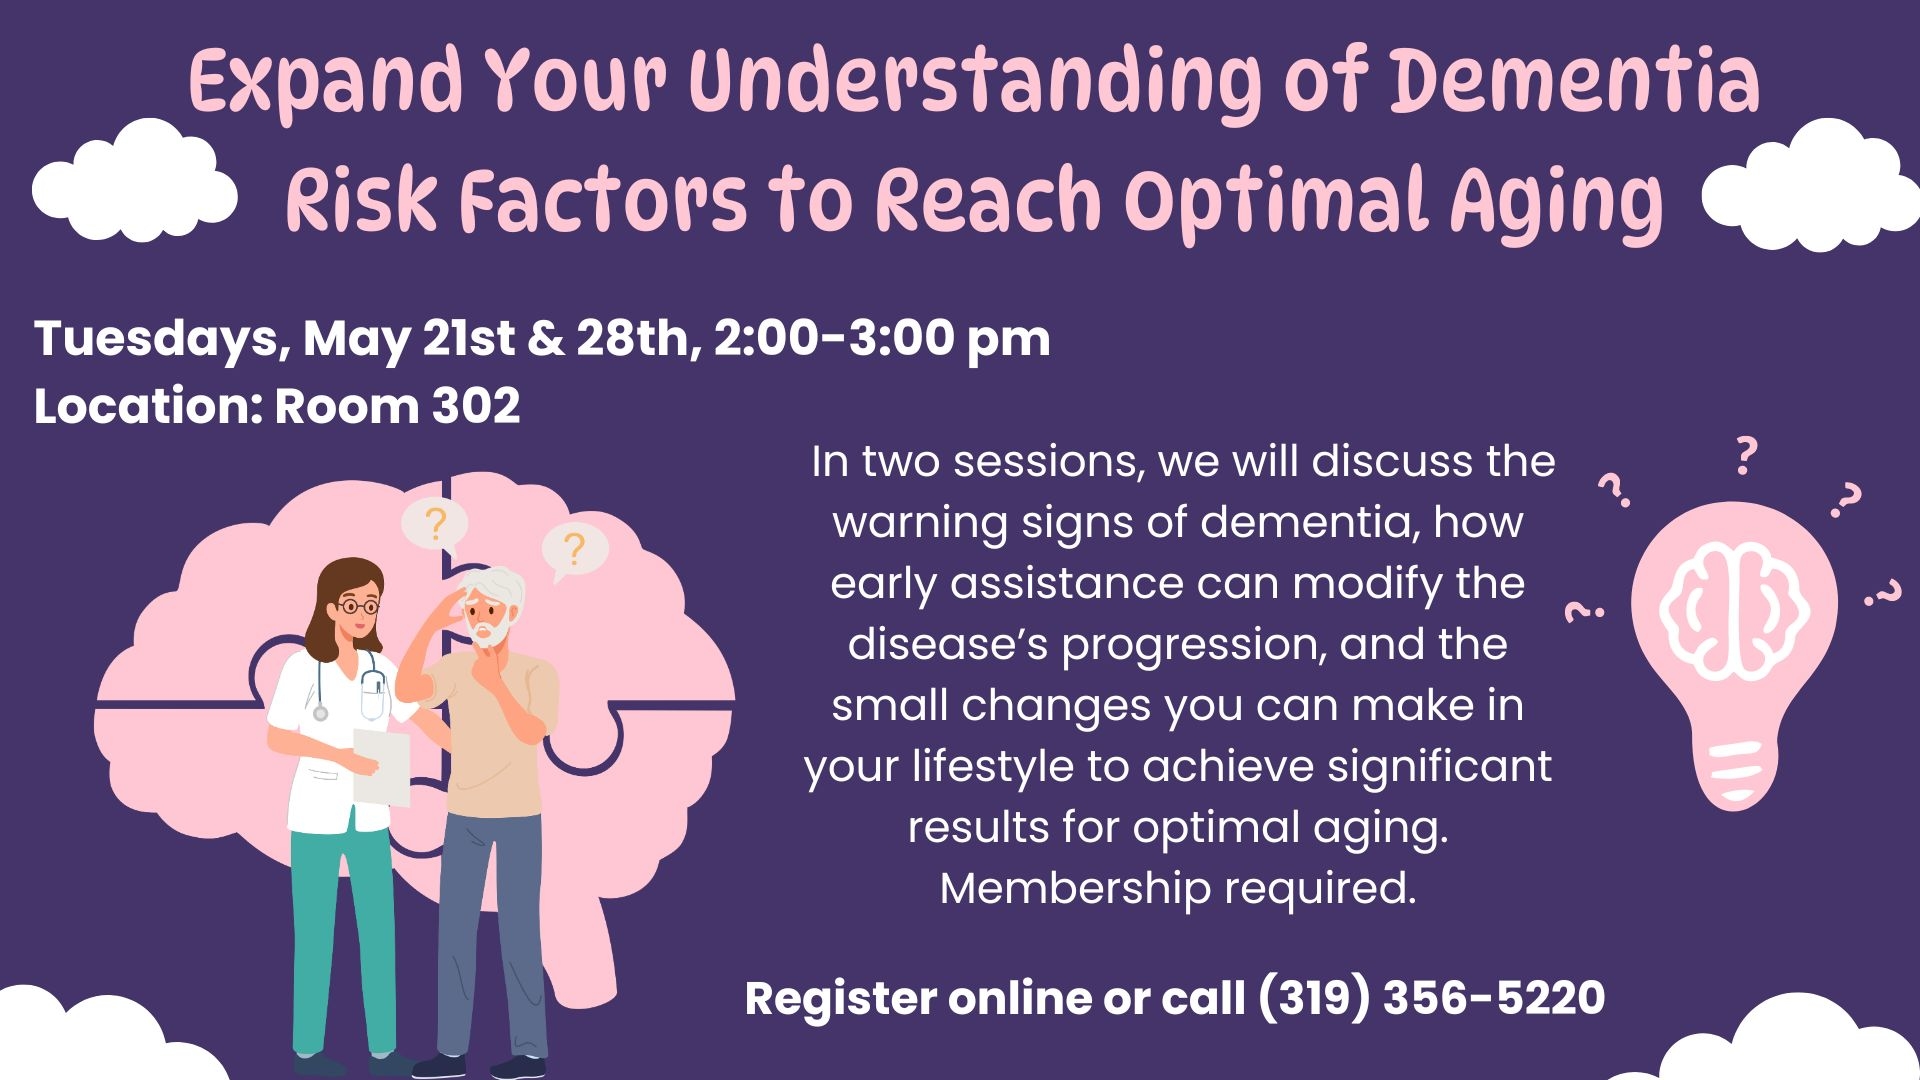 Expand Your Understanding of Dementia Risk Factors